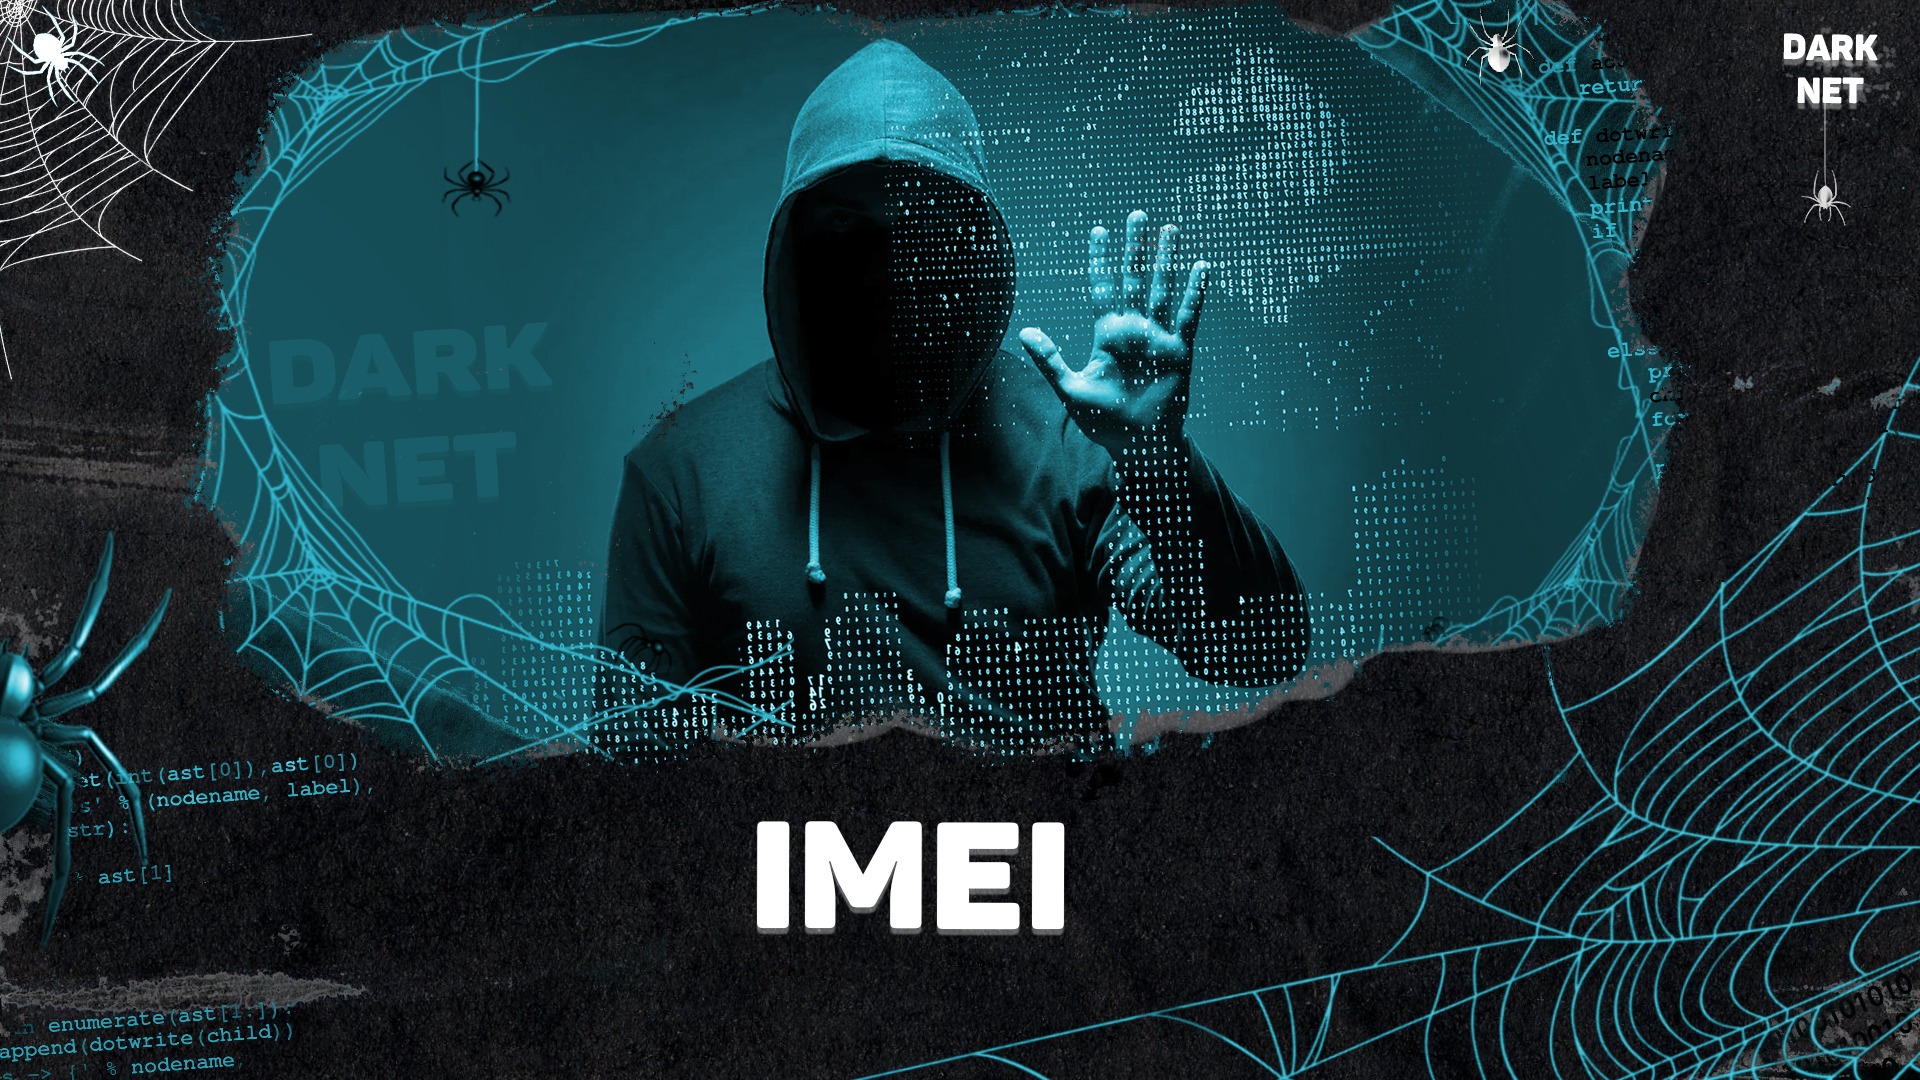 Discover the Underground World of Darknet Markets and URLs on the Dark Web